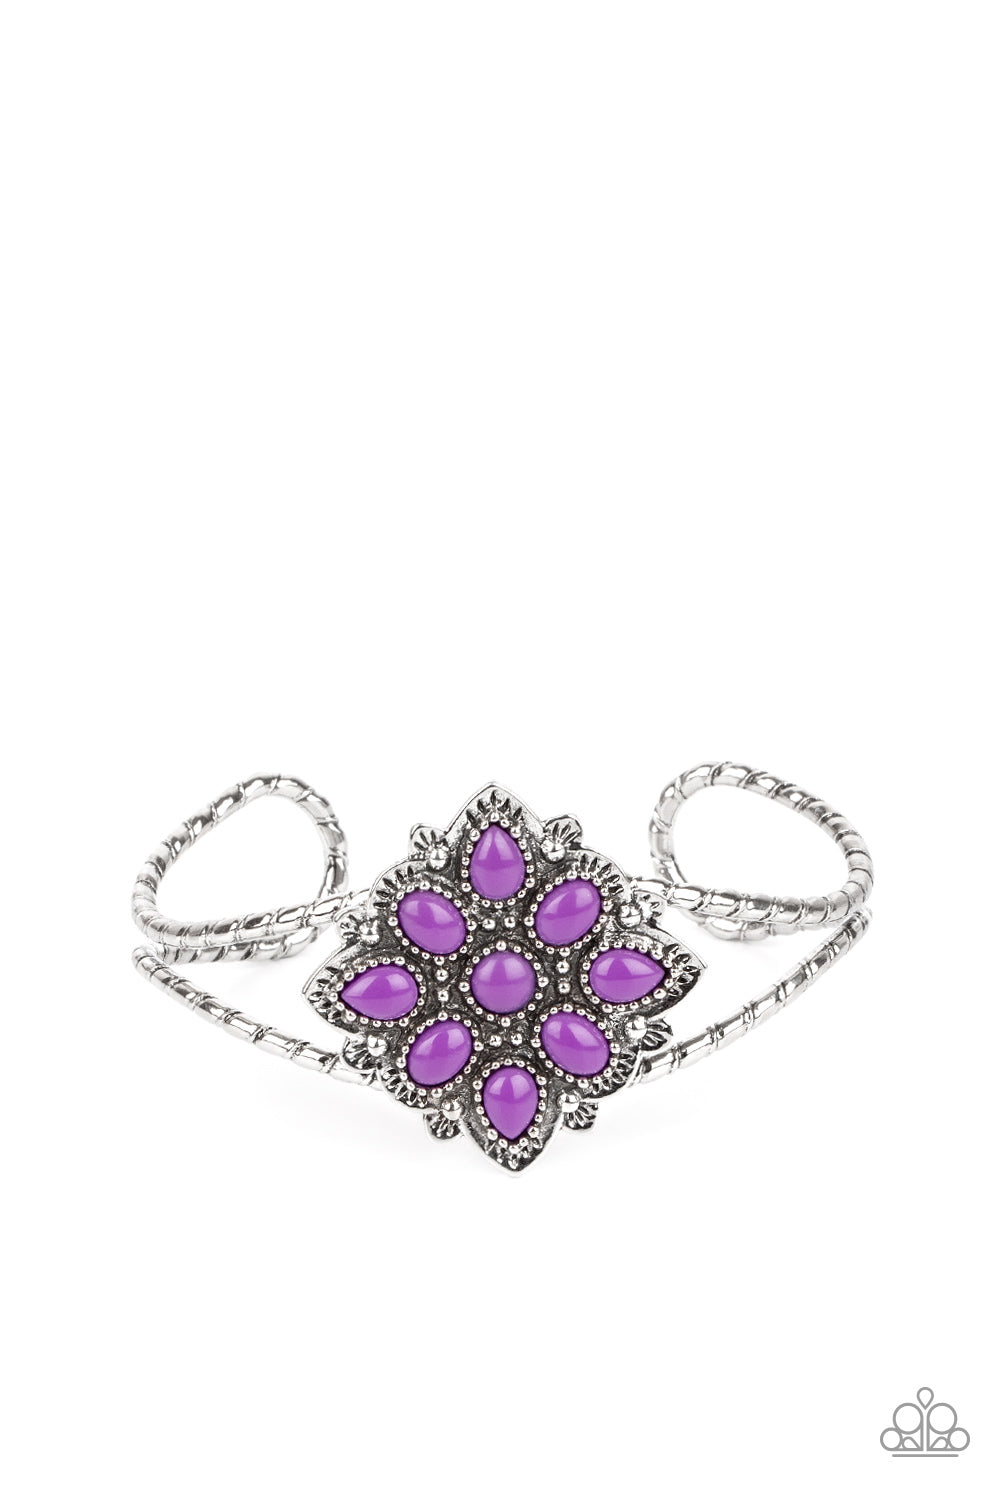 Paparazzi - Happily Ever APPLIQUE - Purple Bracelet-Paparazzi Accessories - Alies Bling Bar